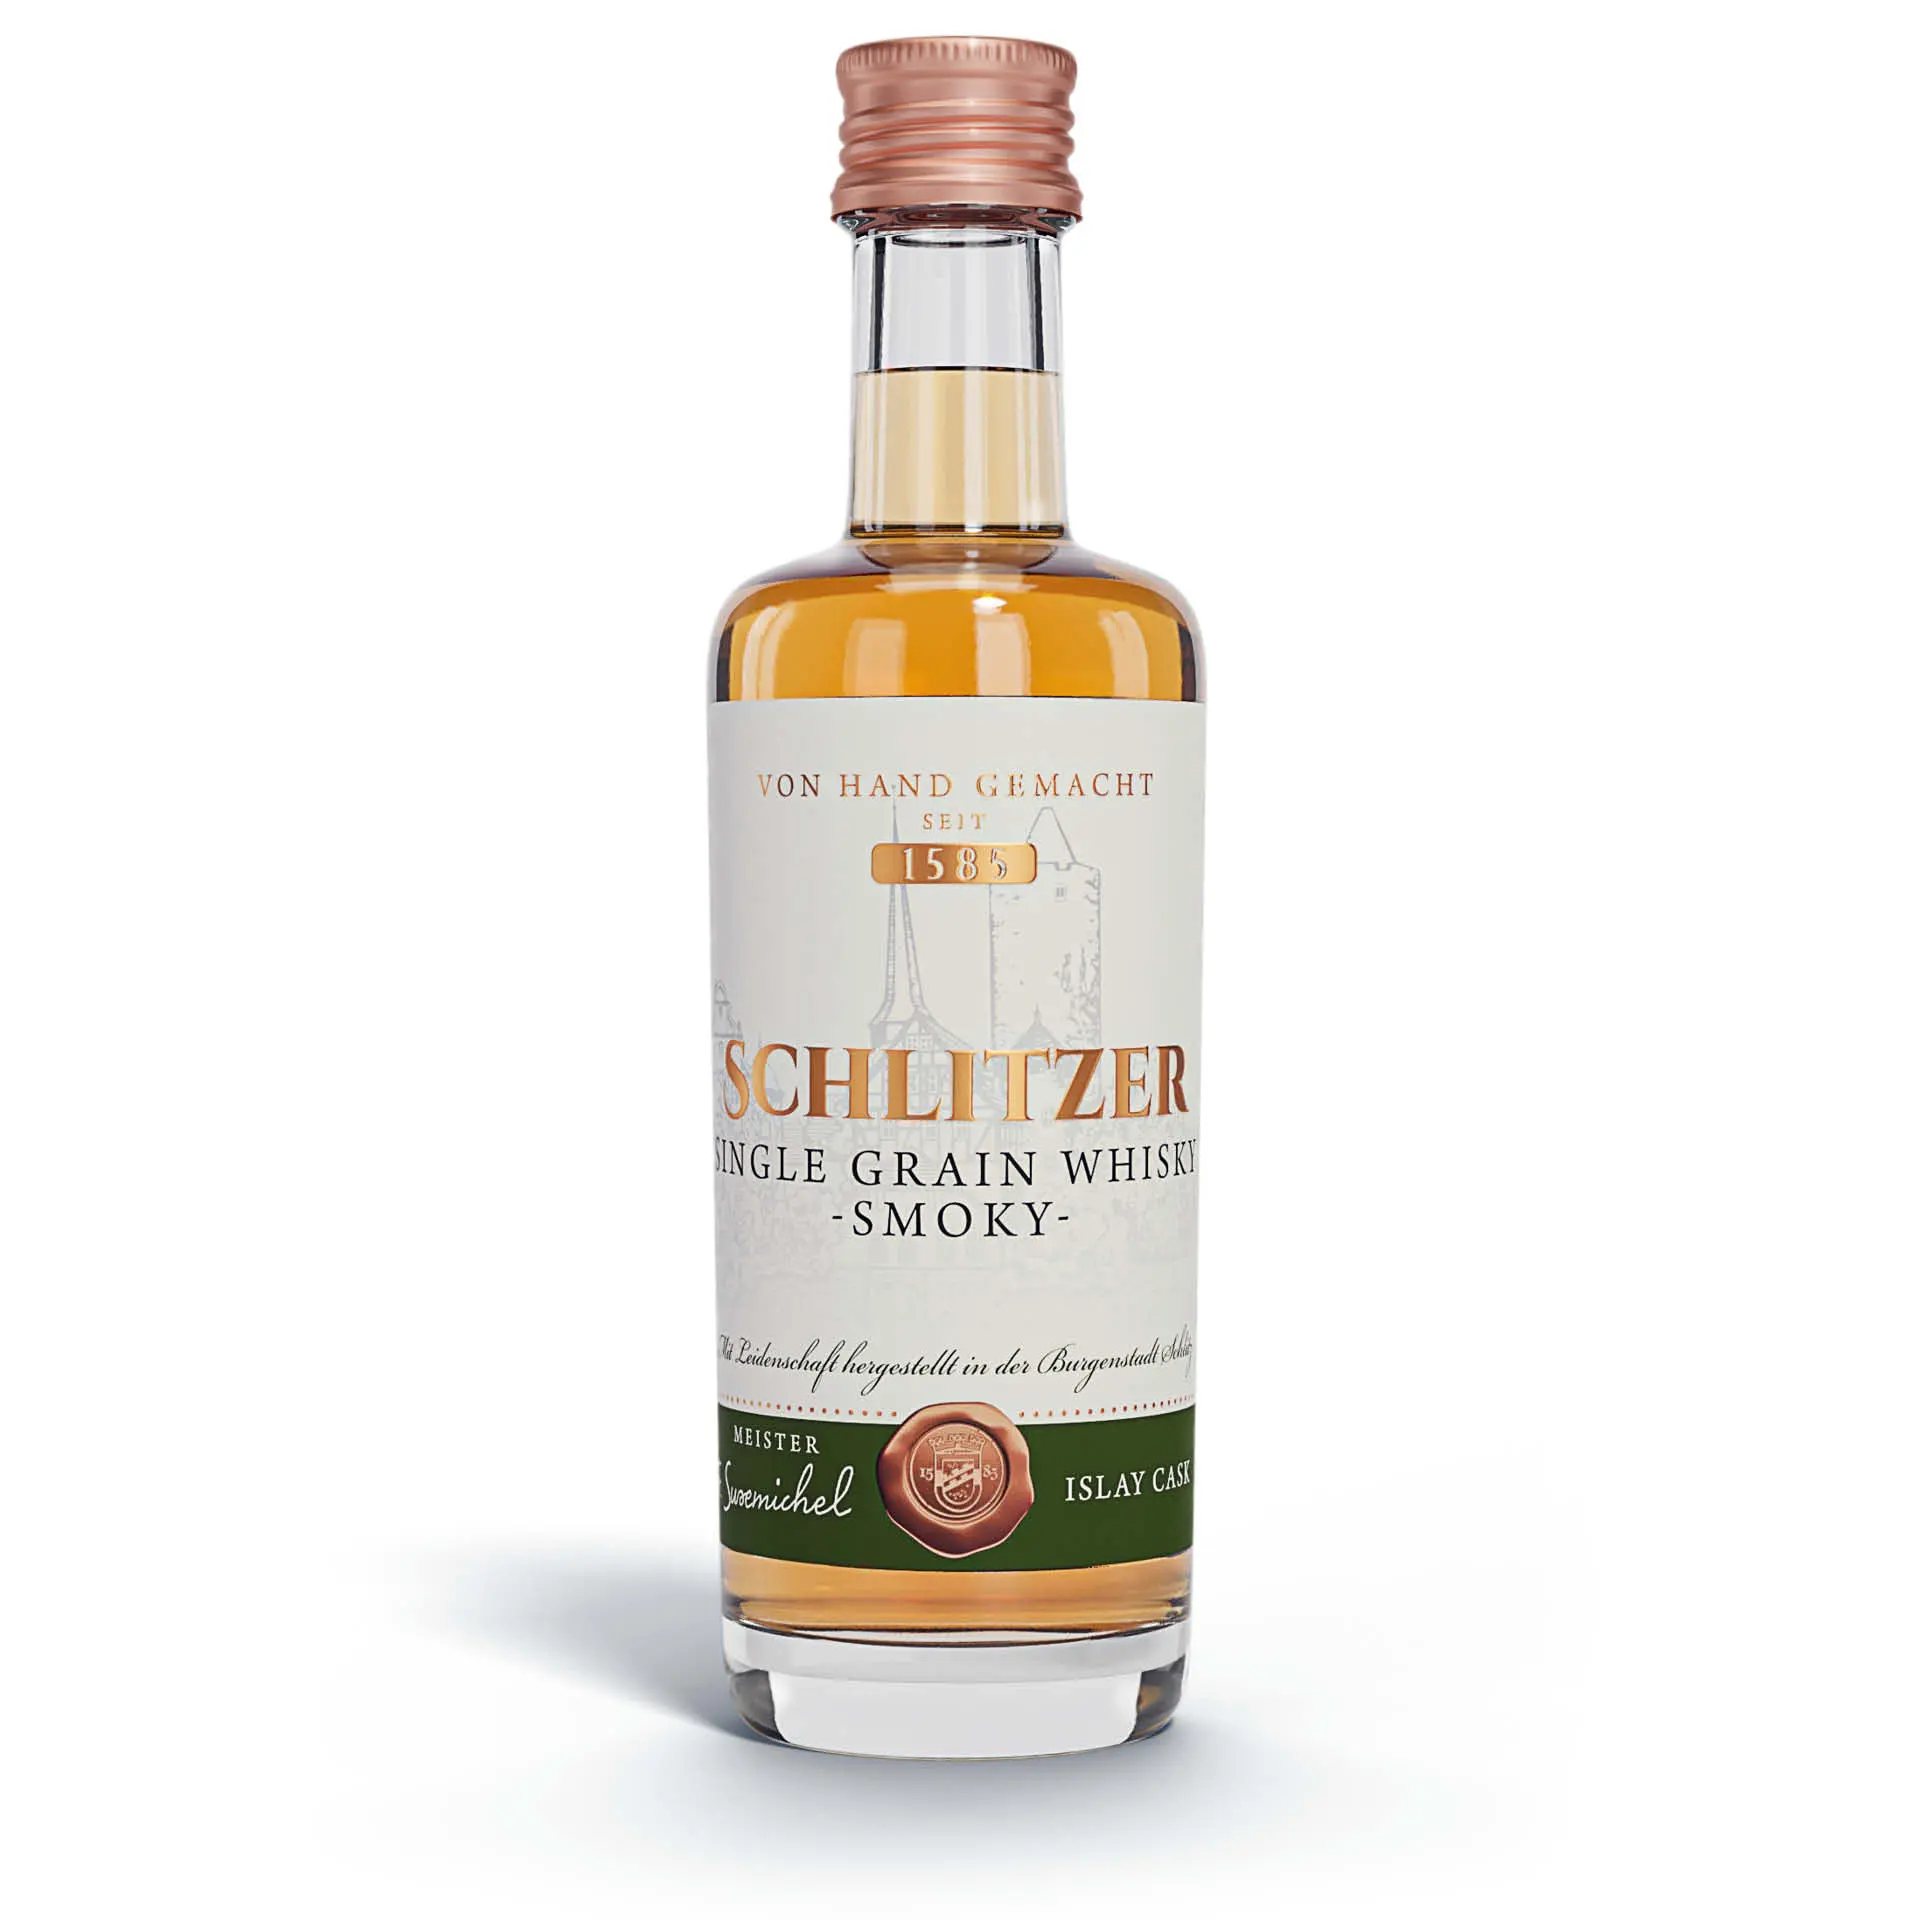 Single Grain Whisky smoky 48,8%vol. in einer 0,05 Liter Flasche mit Schraubverschluss